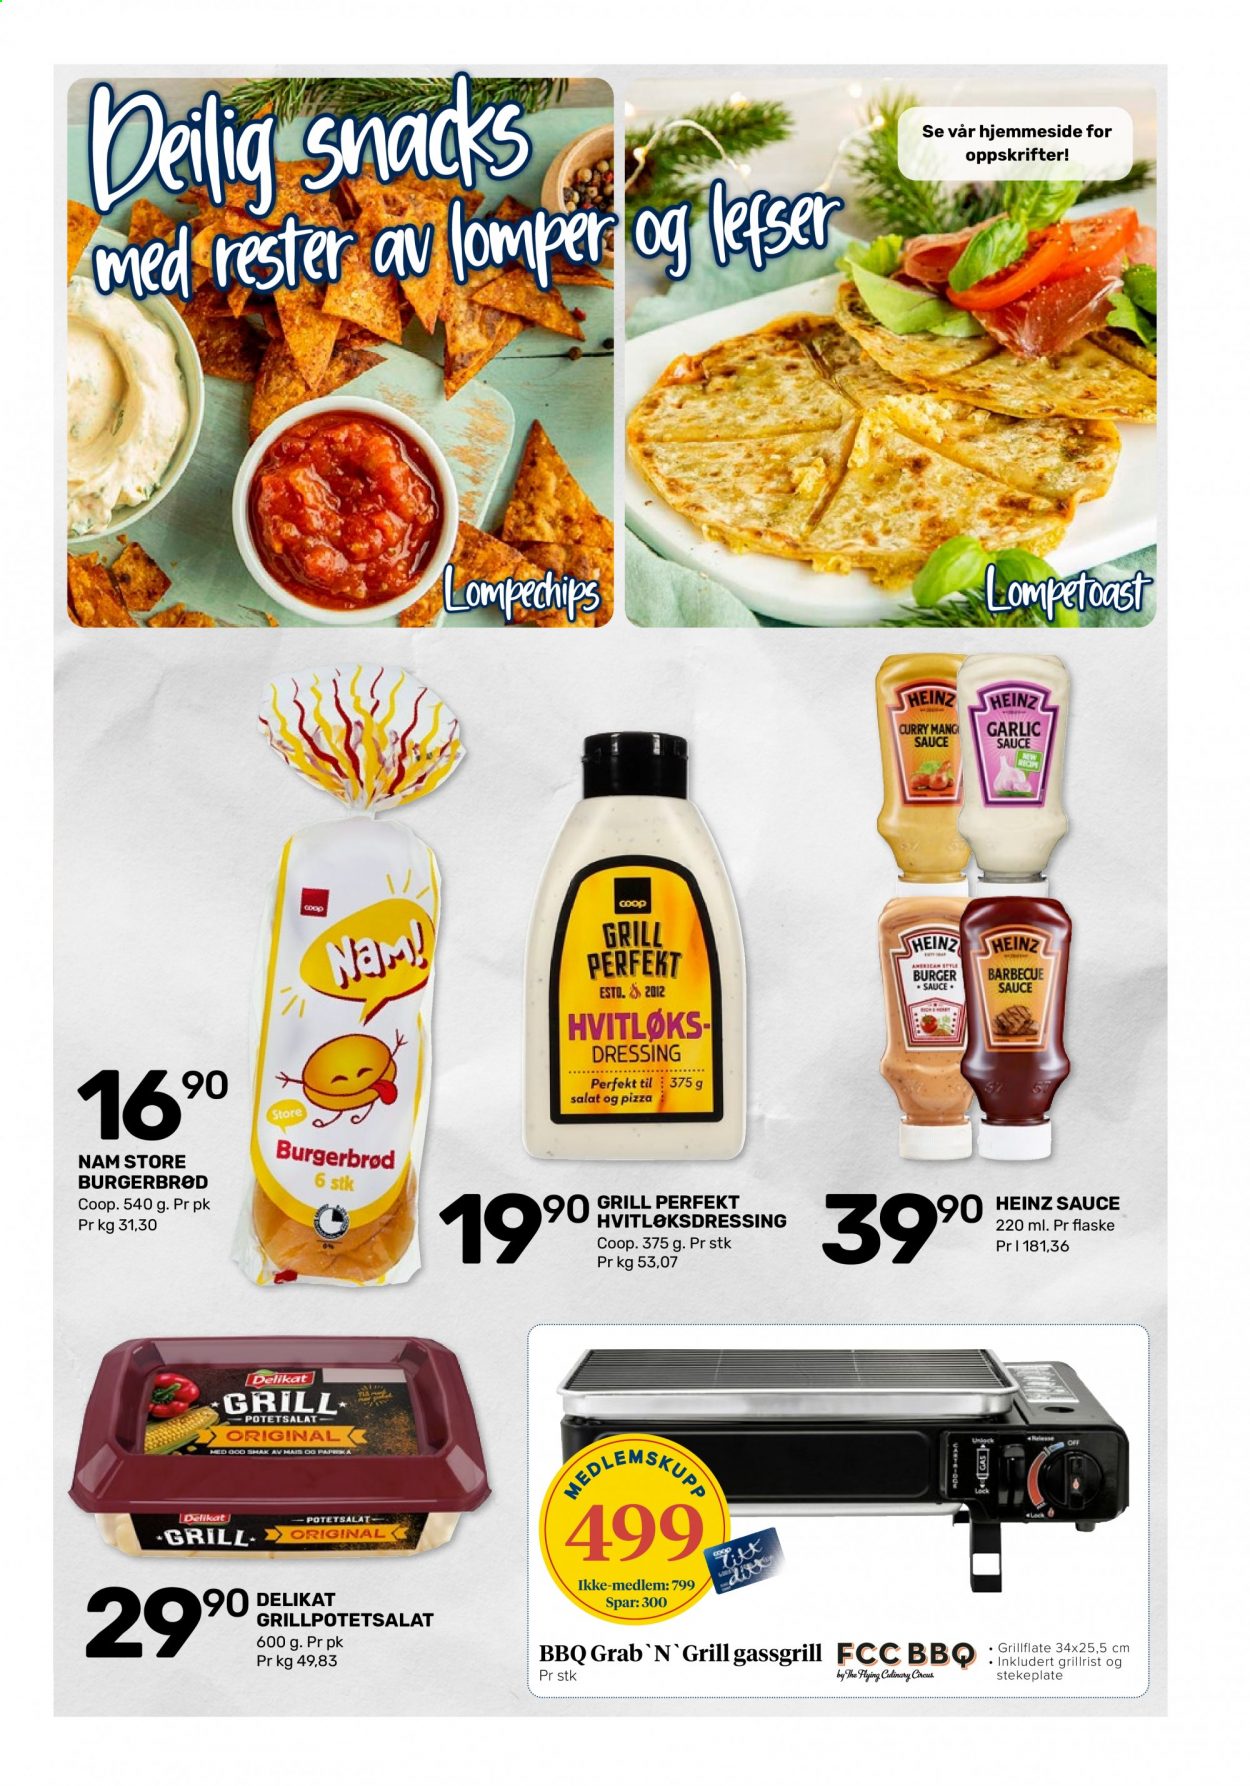 thumbnail - Kundeavis Coop Marked - 14.6.2021 - 26.6.2021 - Produkter fra tilbudsaviser - burger, mais, salat, burgerbrød, pizza, potetsalat, Heinz, curry, barbequesaus, dressing. Side 7.